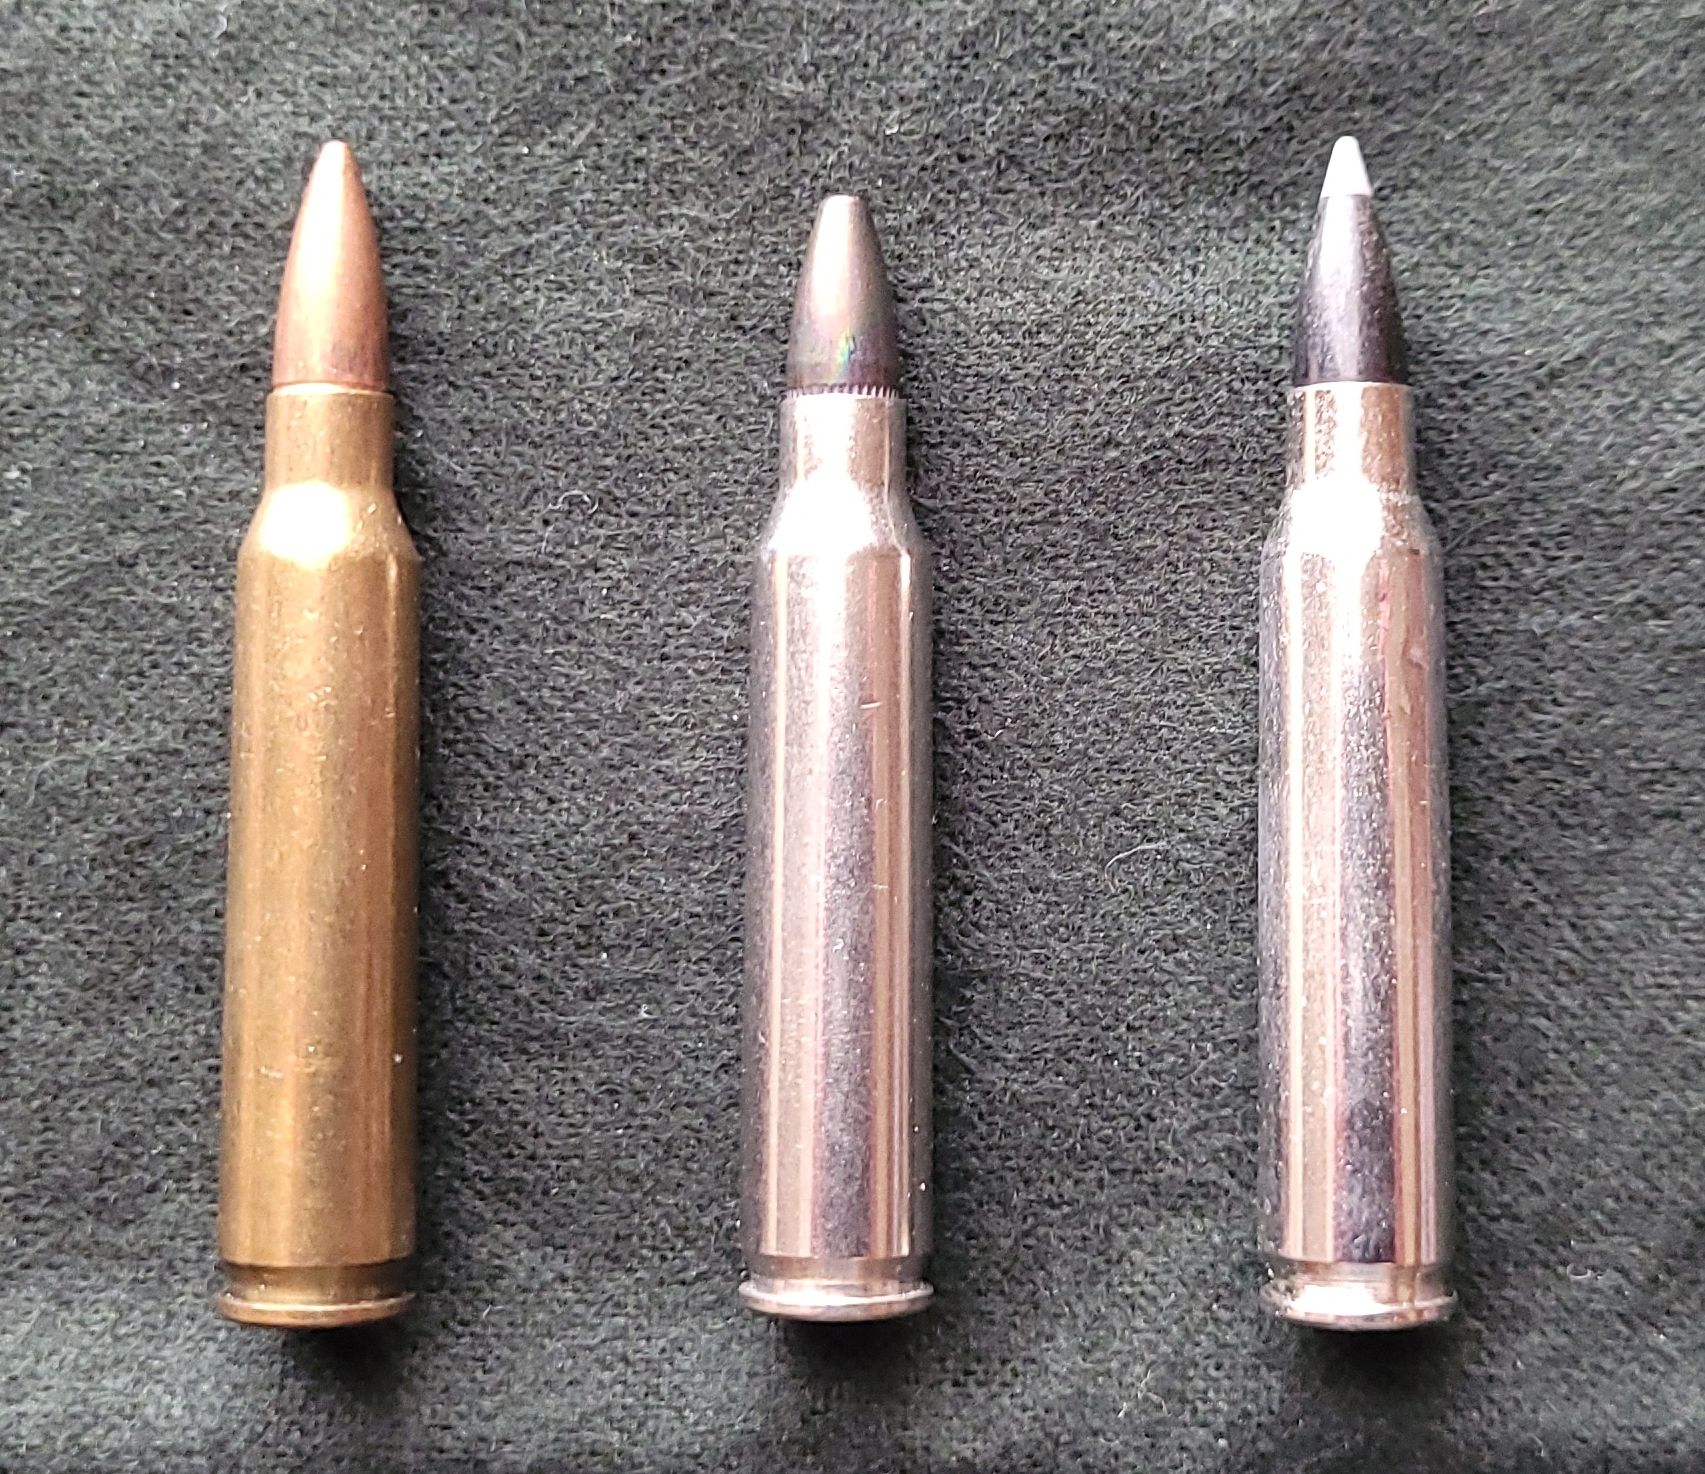 Ballistic gel test of ancient sling bullets